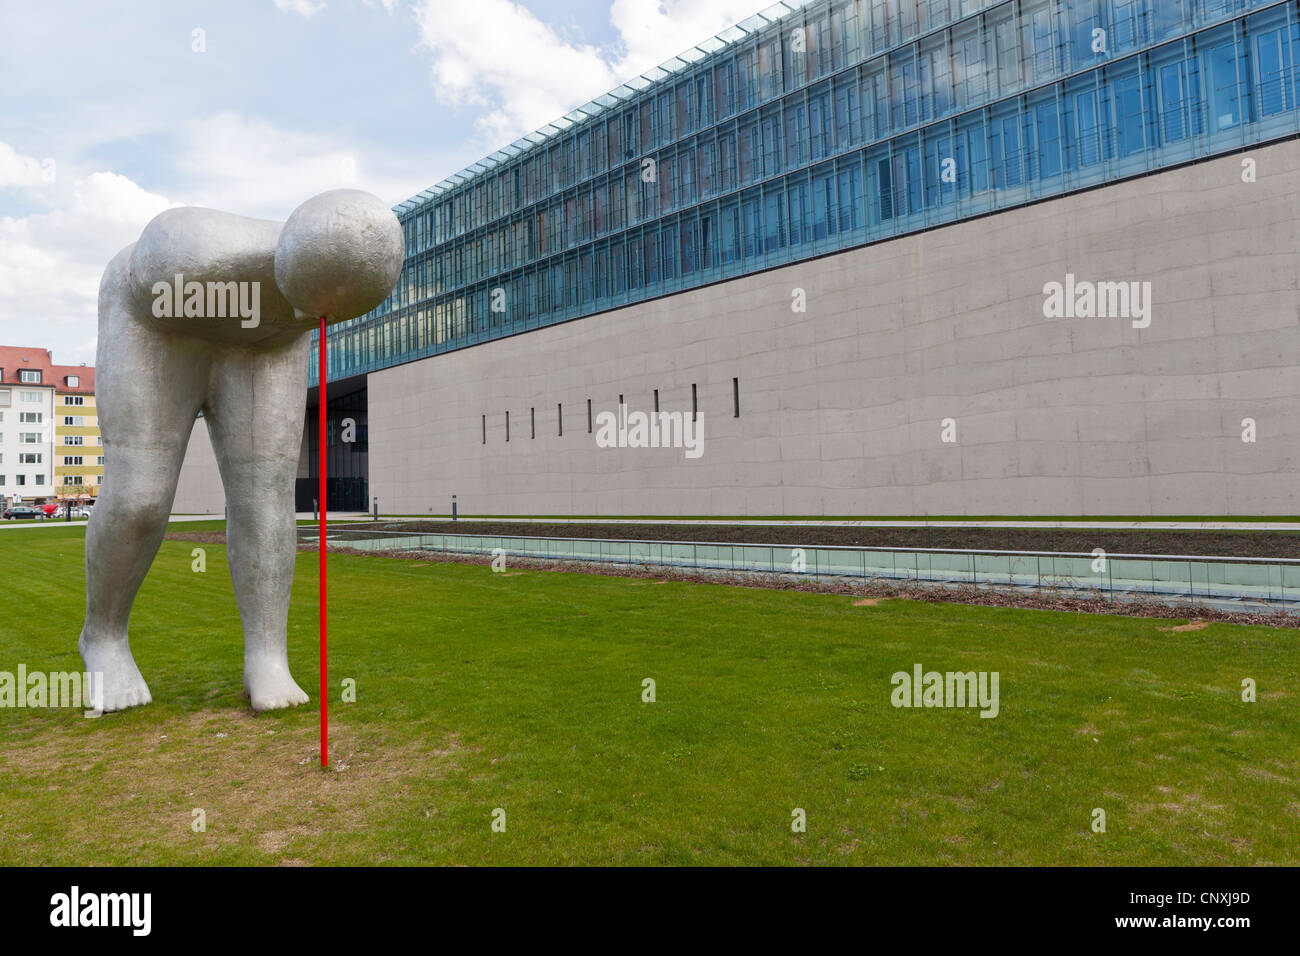 Hff München Stockfotos und -bilder Kaufen - Alamy